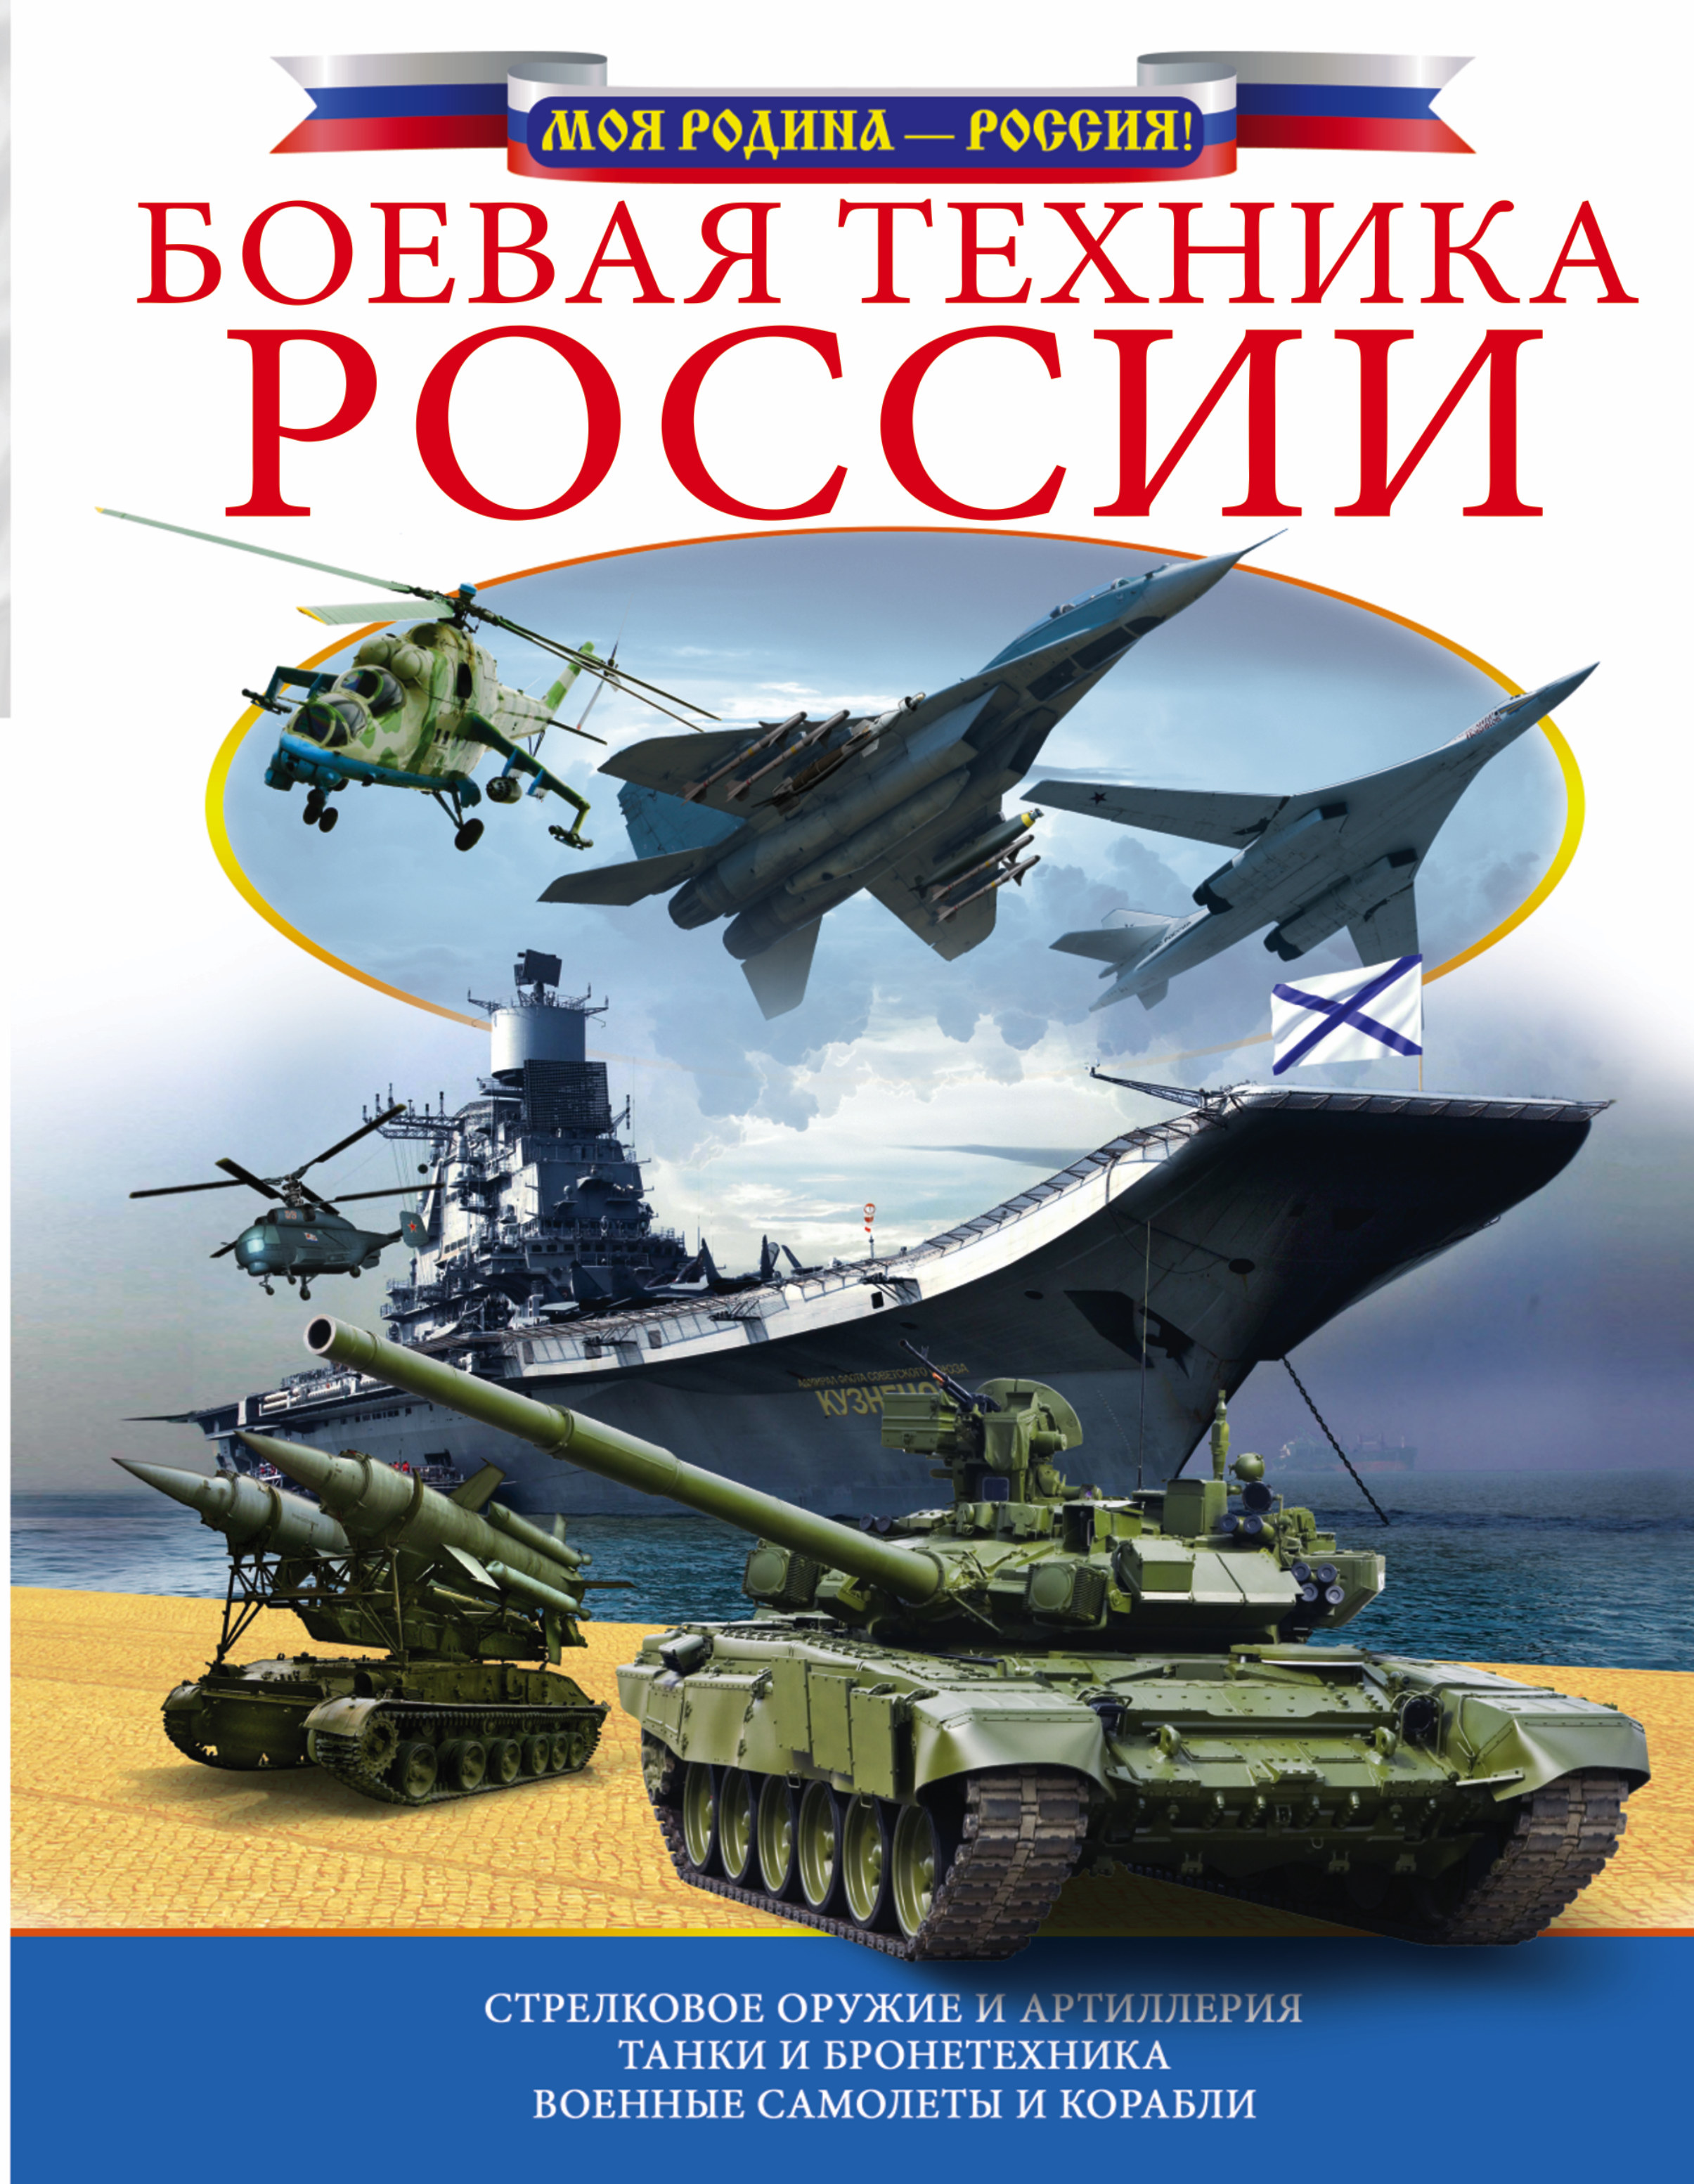  Боевая техника России - страница 0